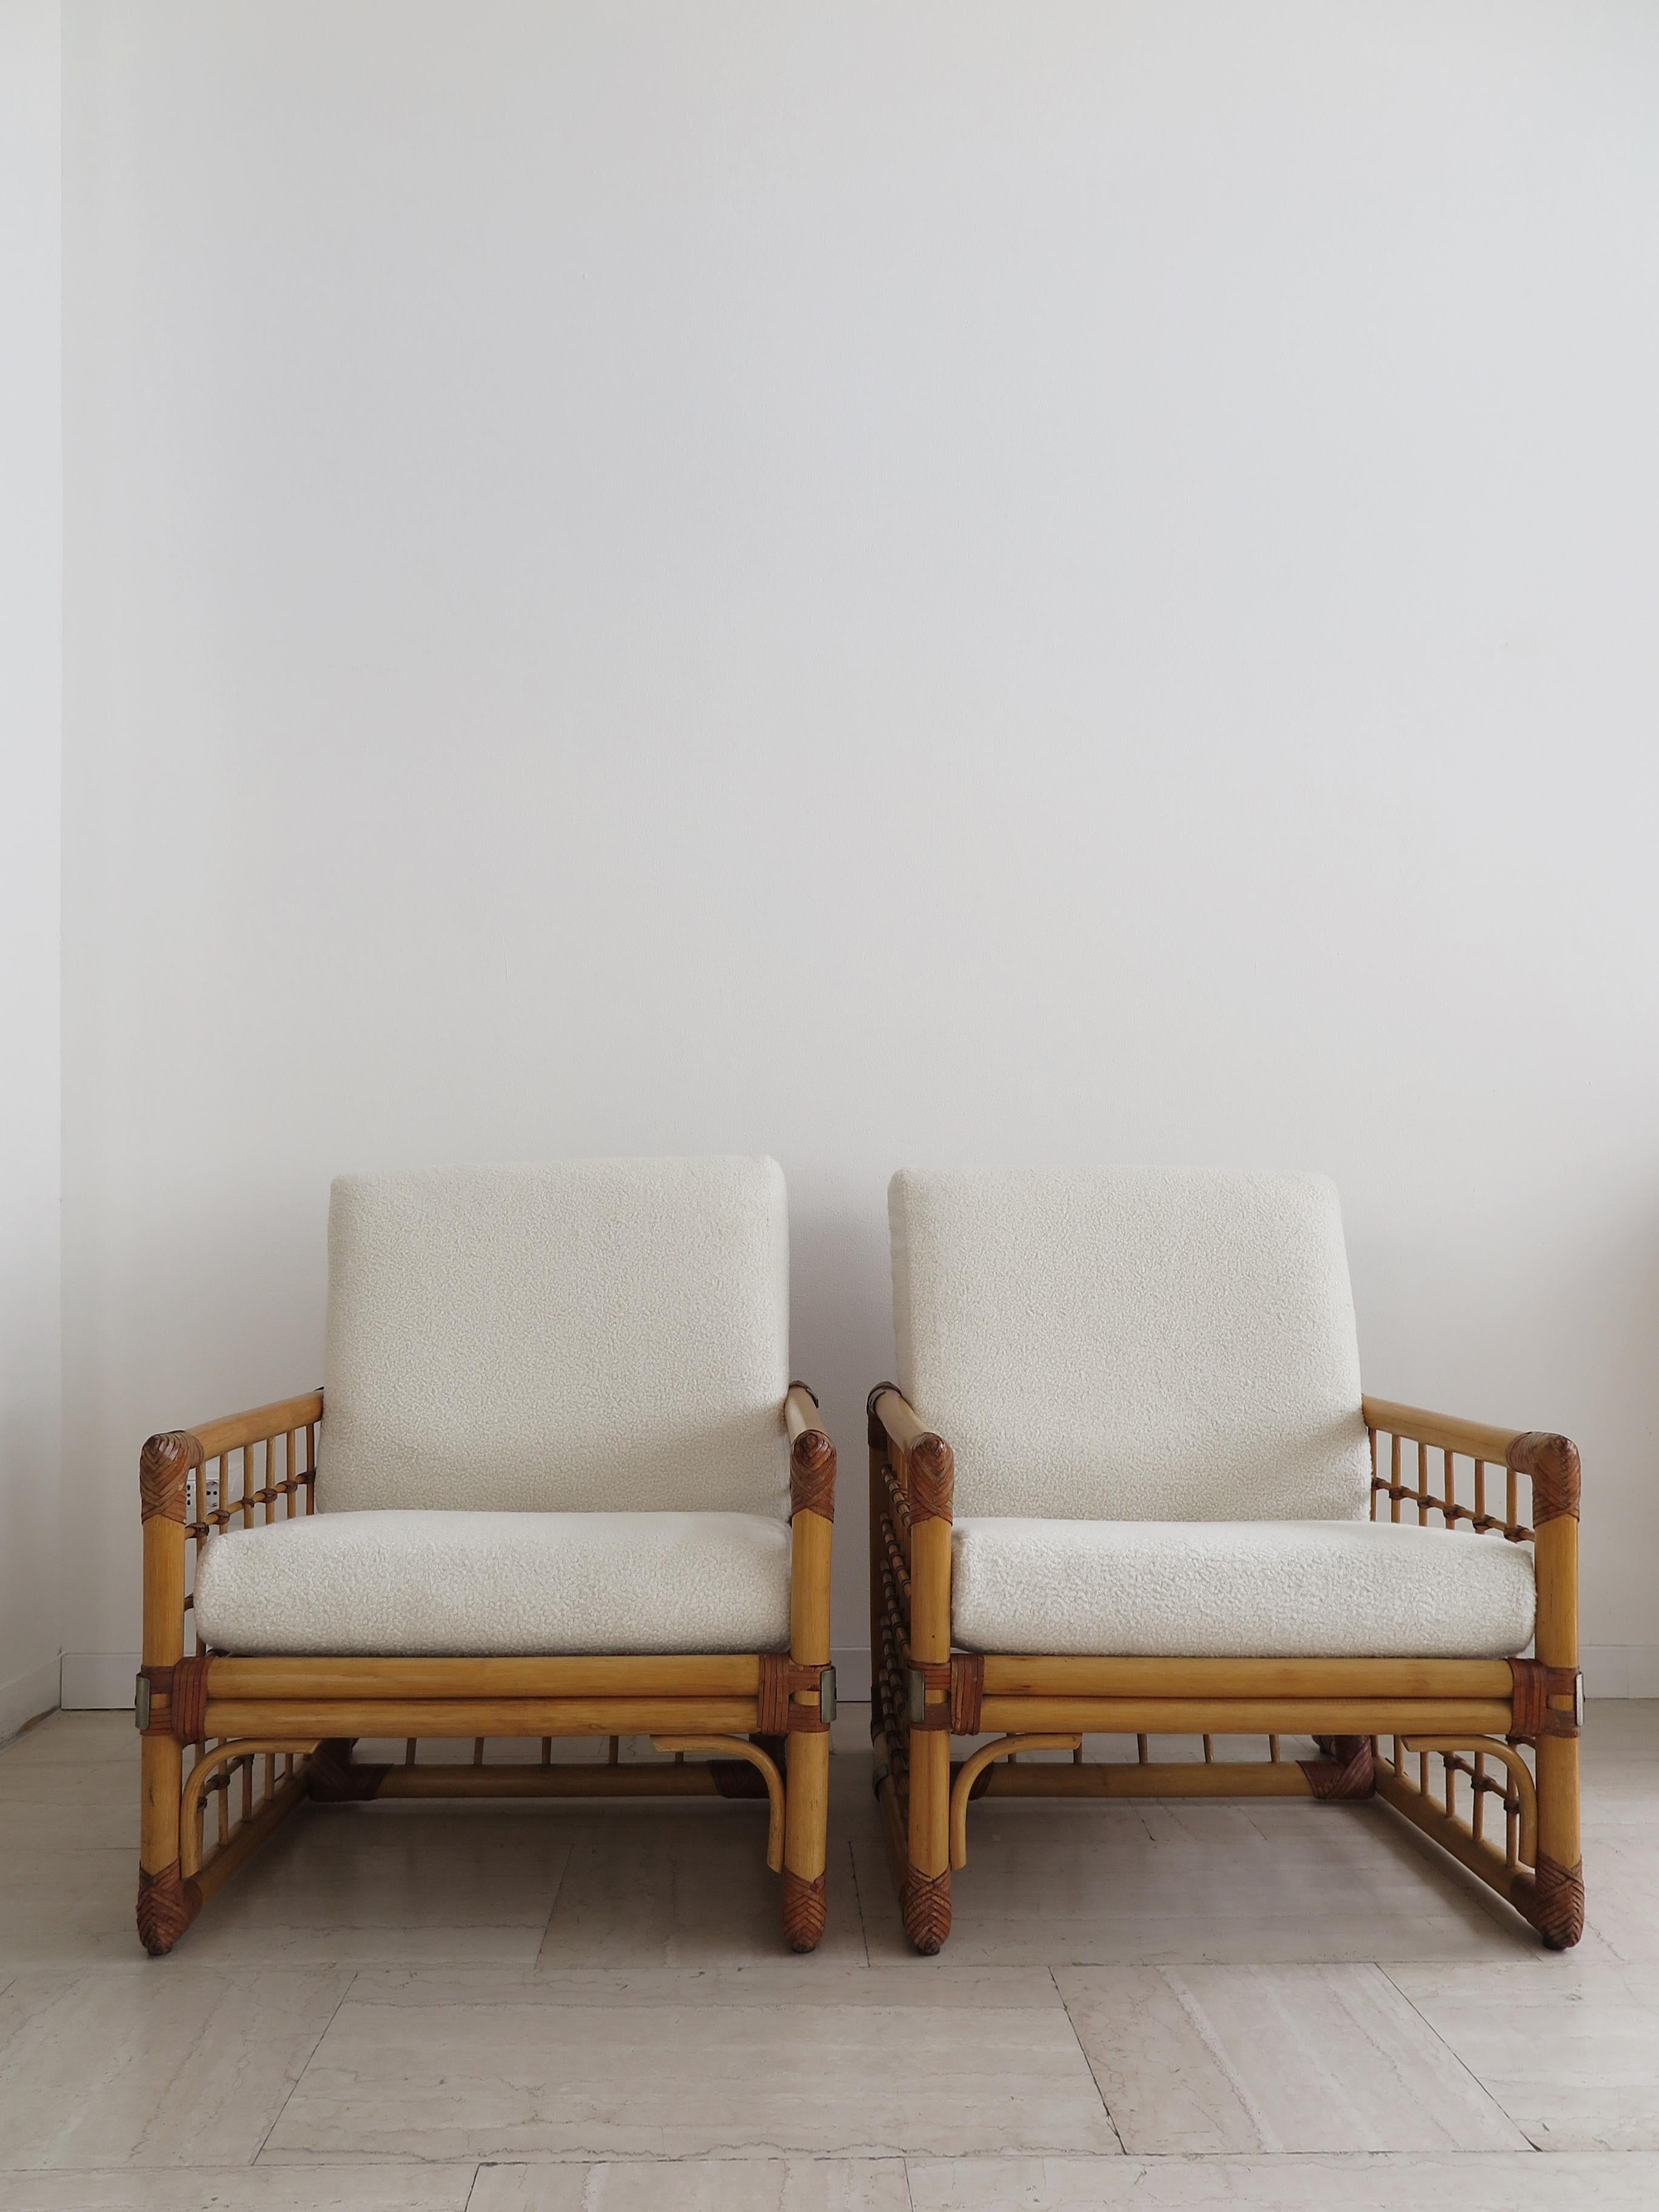 Paar italienische Sessel im modernen Design der Jahrhundertmitte mit Bambusgestell, indischem Rohr, Leder und Metalldetails mit Bouclè-Stoffkissen, Italien, Produktion 1970er Jahre.

Die Kissen sind mit einem Band an der Rückenlehne befestigt und